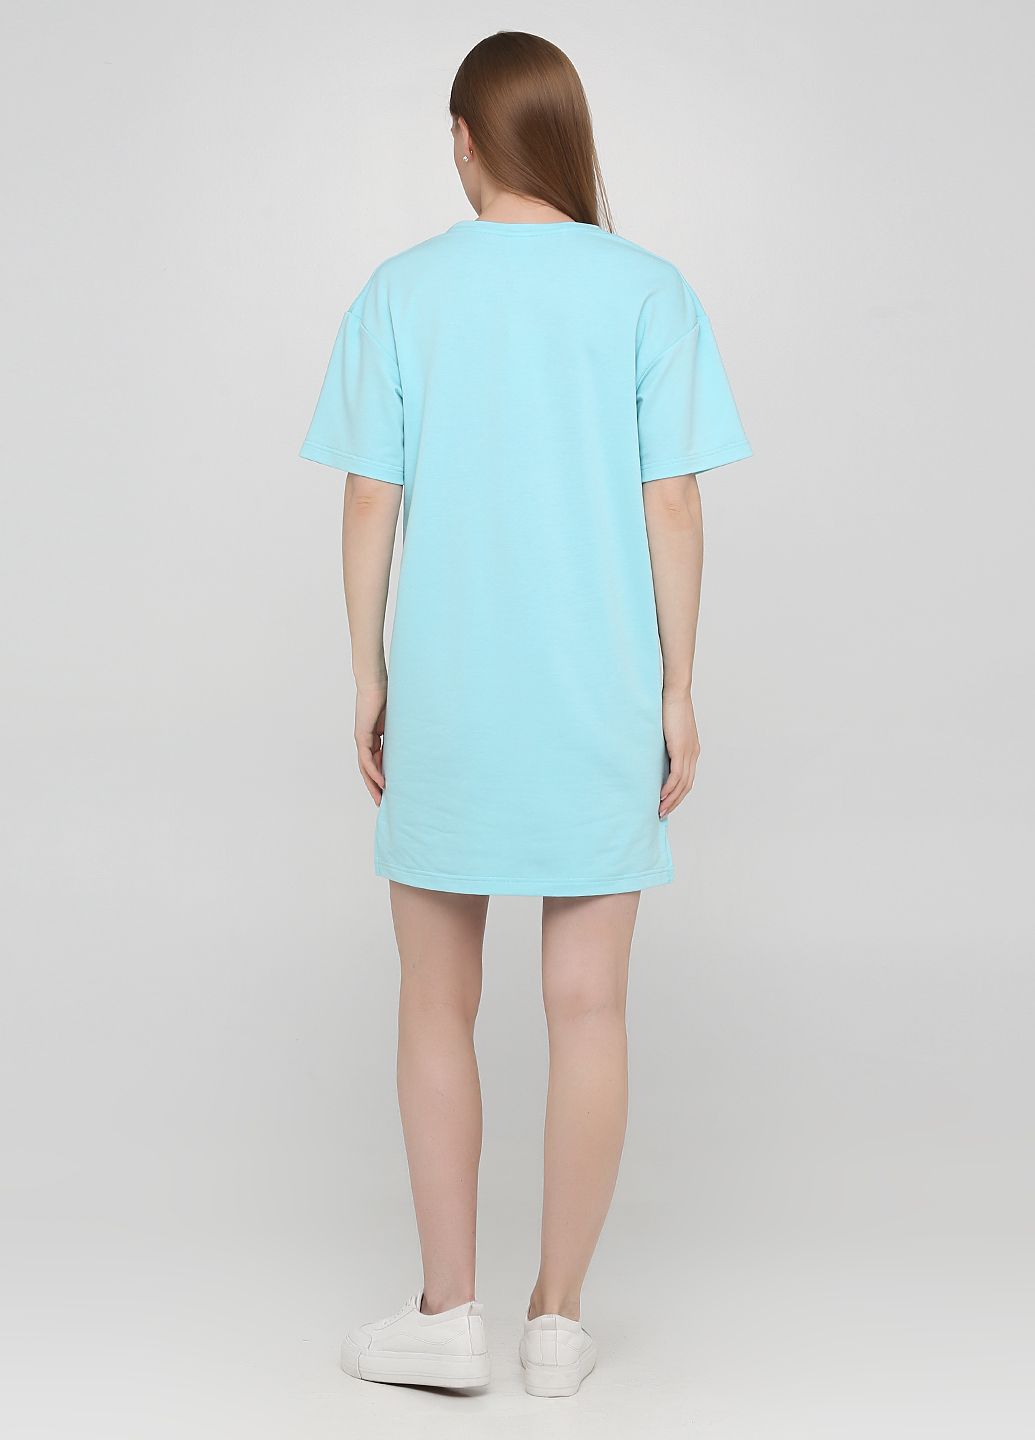 Купить Оверсайз платье Merlini Нанси 700000010 - Голубой, 42-44 в интернет-магазине